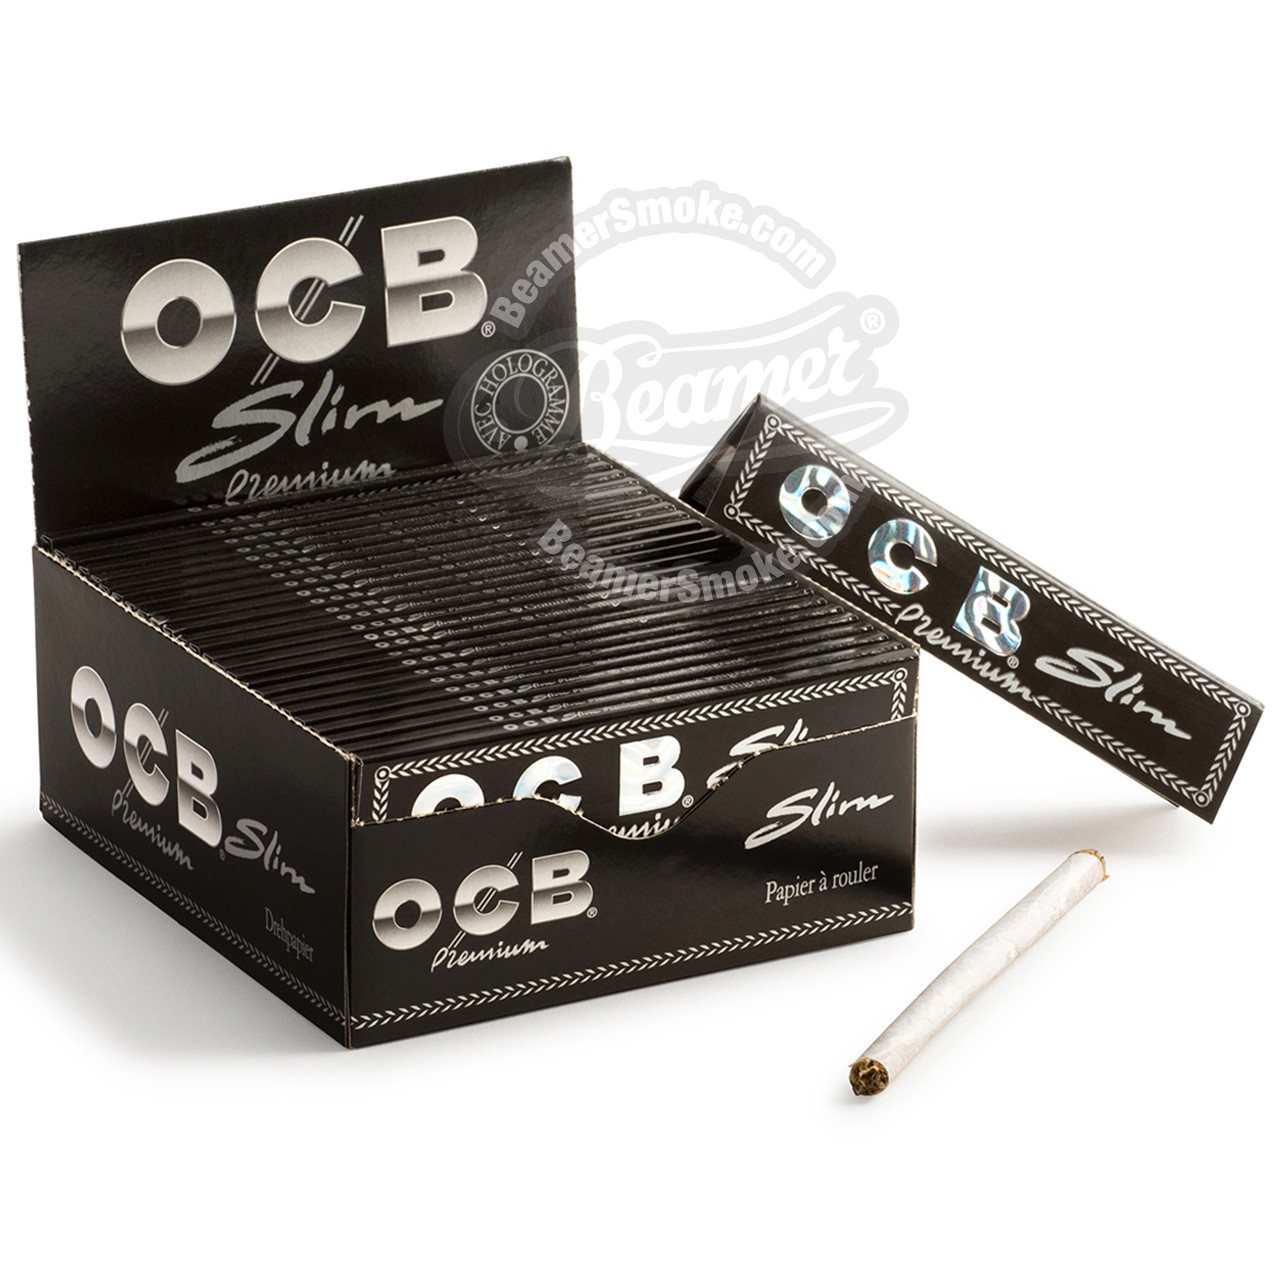 Zigaretten Papier OCB Premium King Size 32 Blätter 44x109mm 